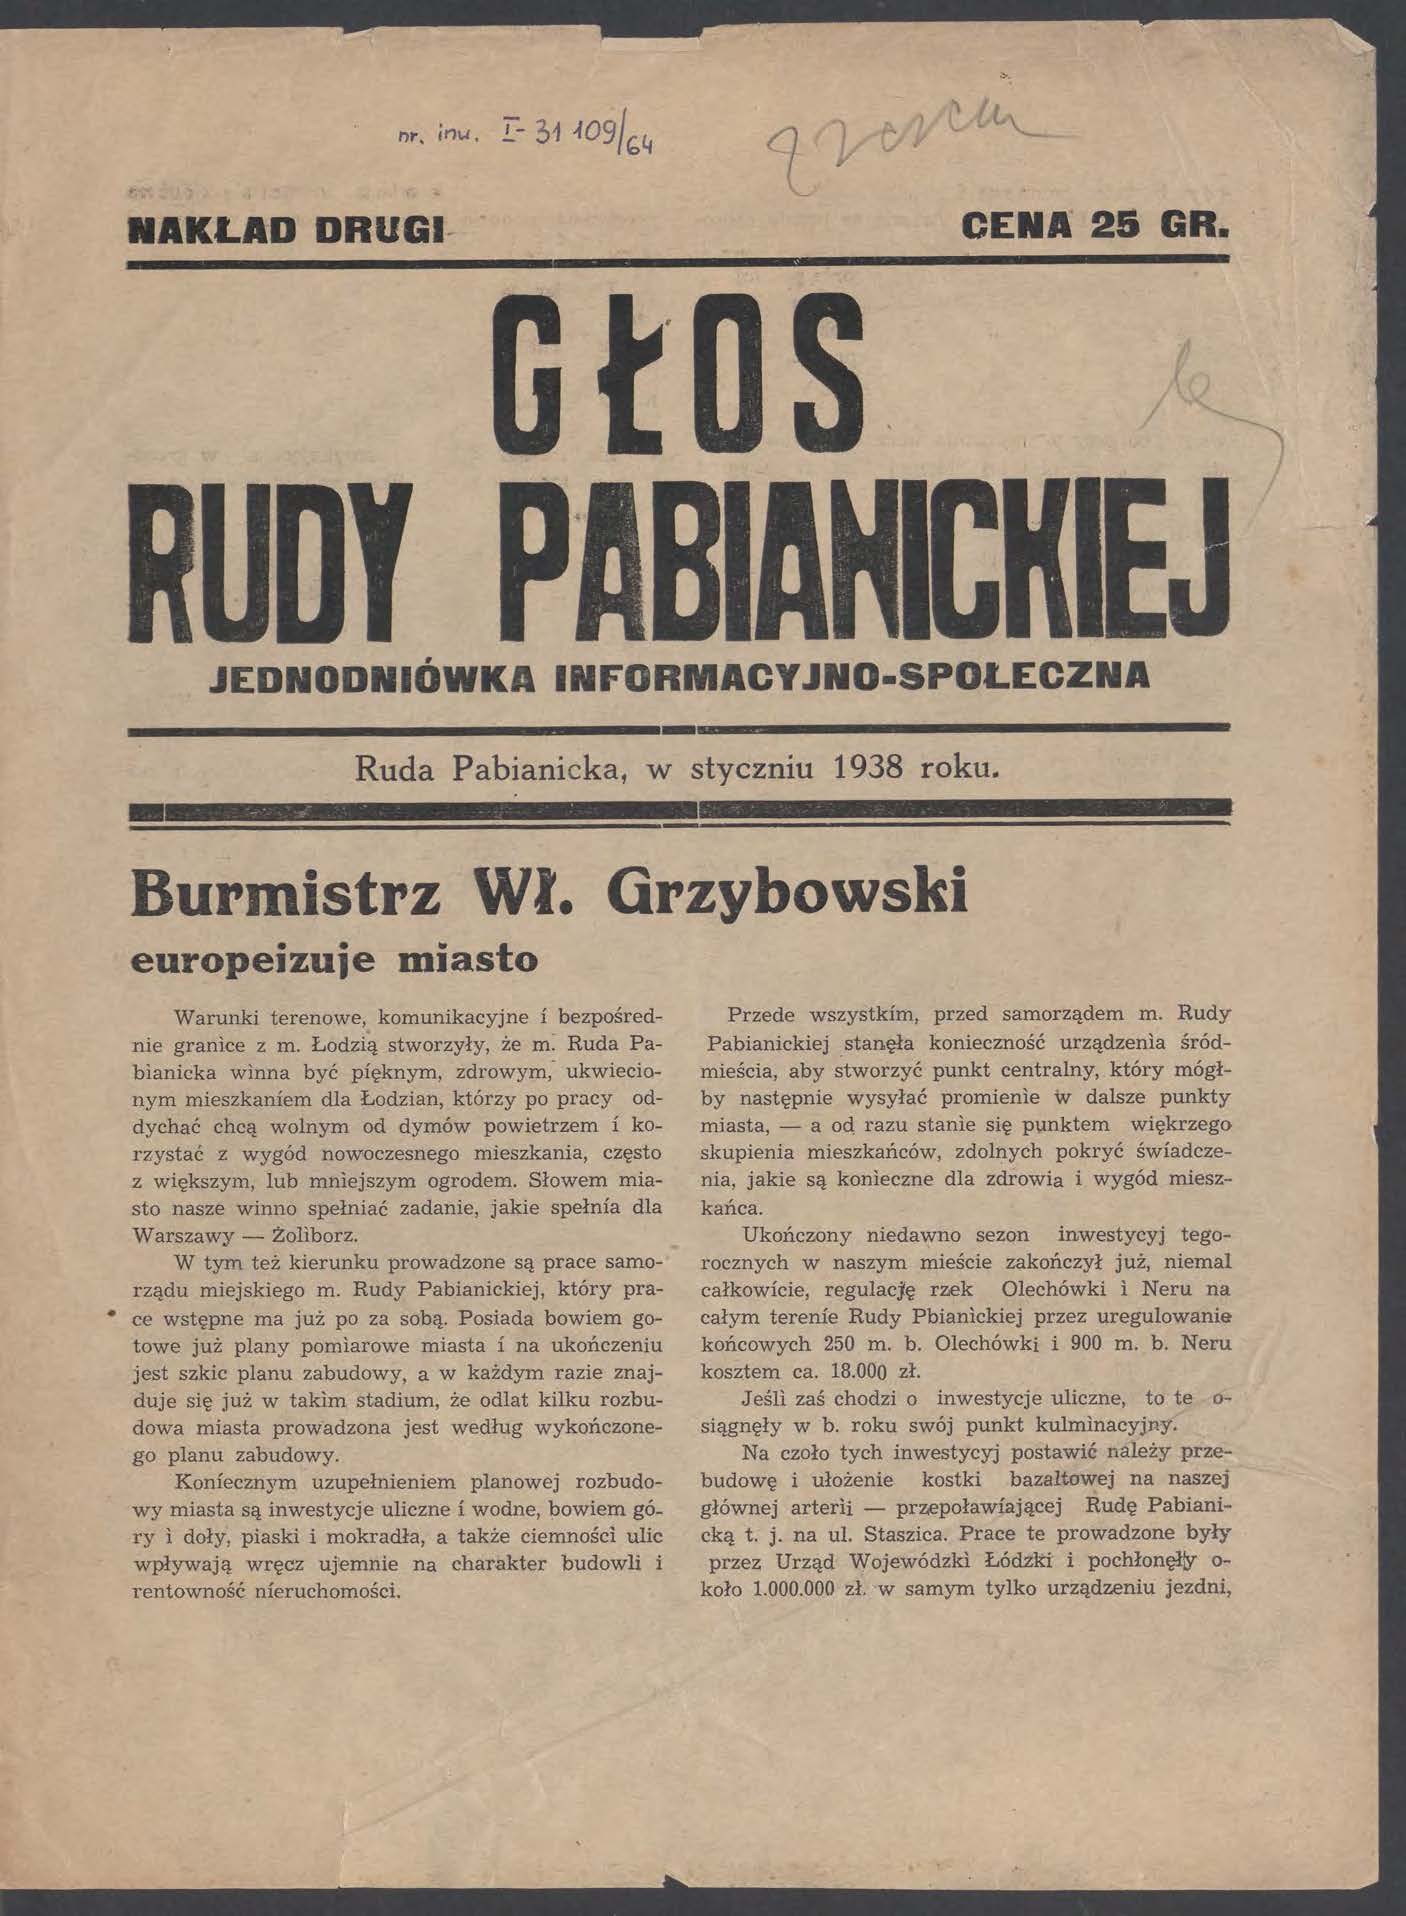 NAKLAD DRUGI- CENA 25 GR. JEDNODNIÓWKA INFORMACY JNO SPOLECZNA.... - Burmistrz Wł. Grzybowski Ruda Pabianicka, w styczniu 1938 roku.